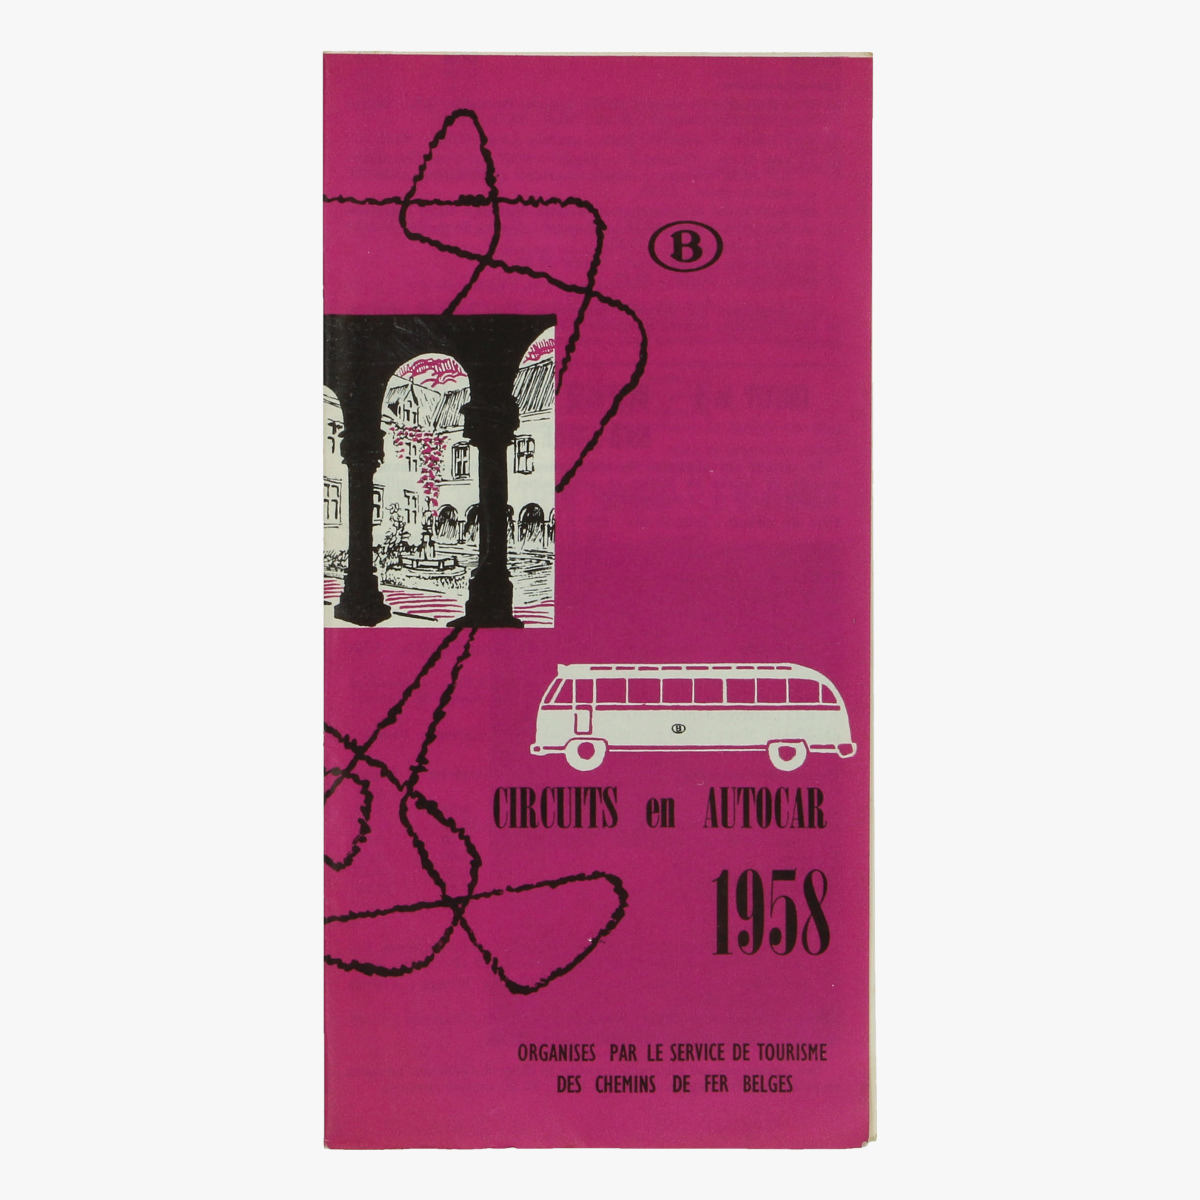 Afbeeldingen van expo 58 folder circuits en autocar 1958